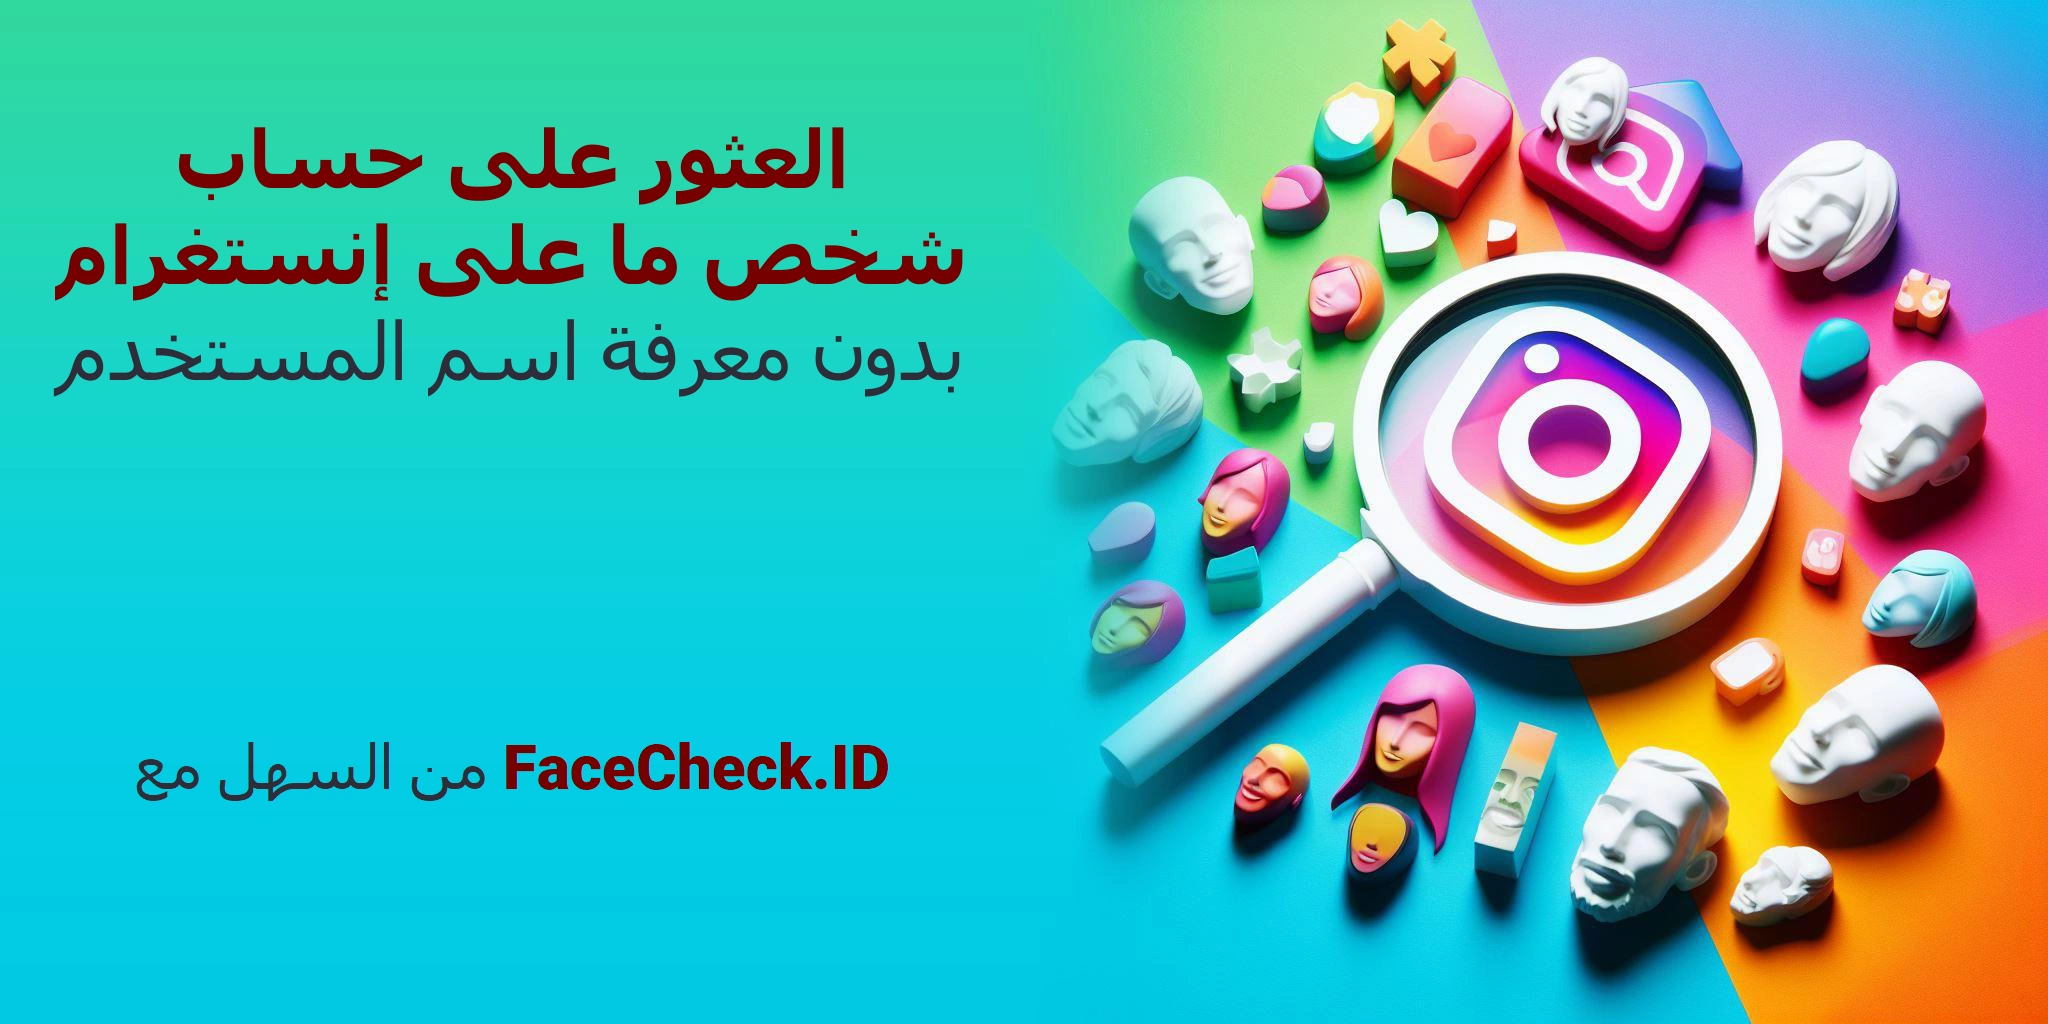 العثور على حساب شخص ما على إنستغرام بدون معرفة اسم المستخدم من السهل مع FaceCheck.ID